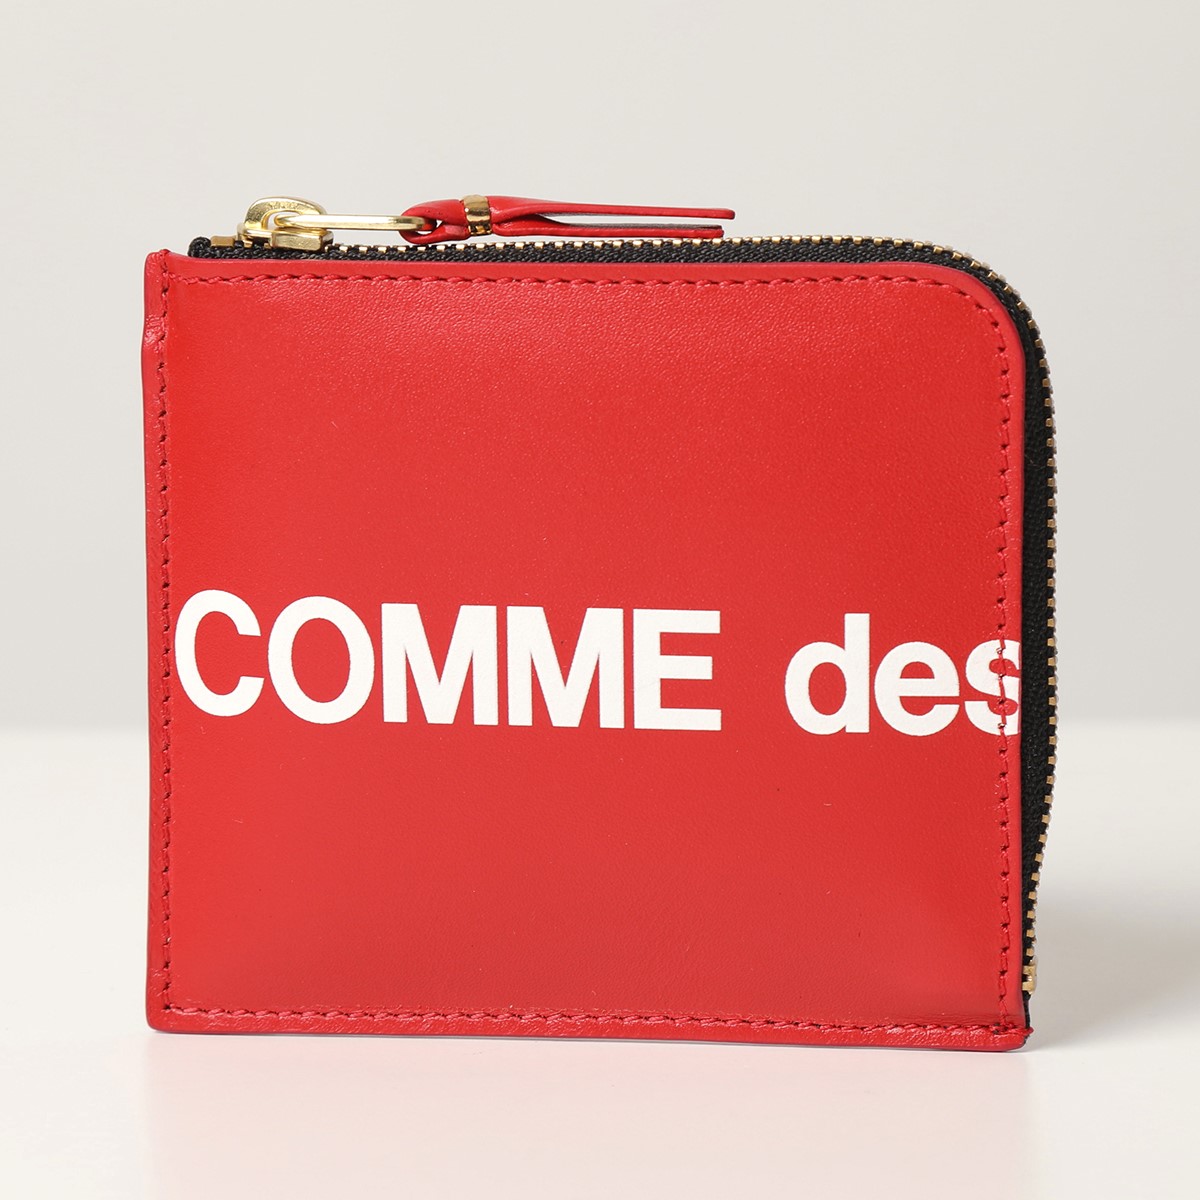 COMME des GARCONS コムデギャルソン SA3100HL HUGE LOGO L字ファスナー コインケース ミニ財布 小銭入れ  RED メンズ レディース インポートセレクト musee